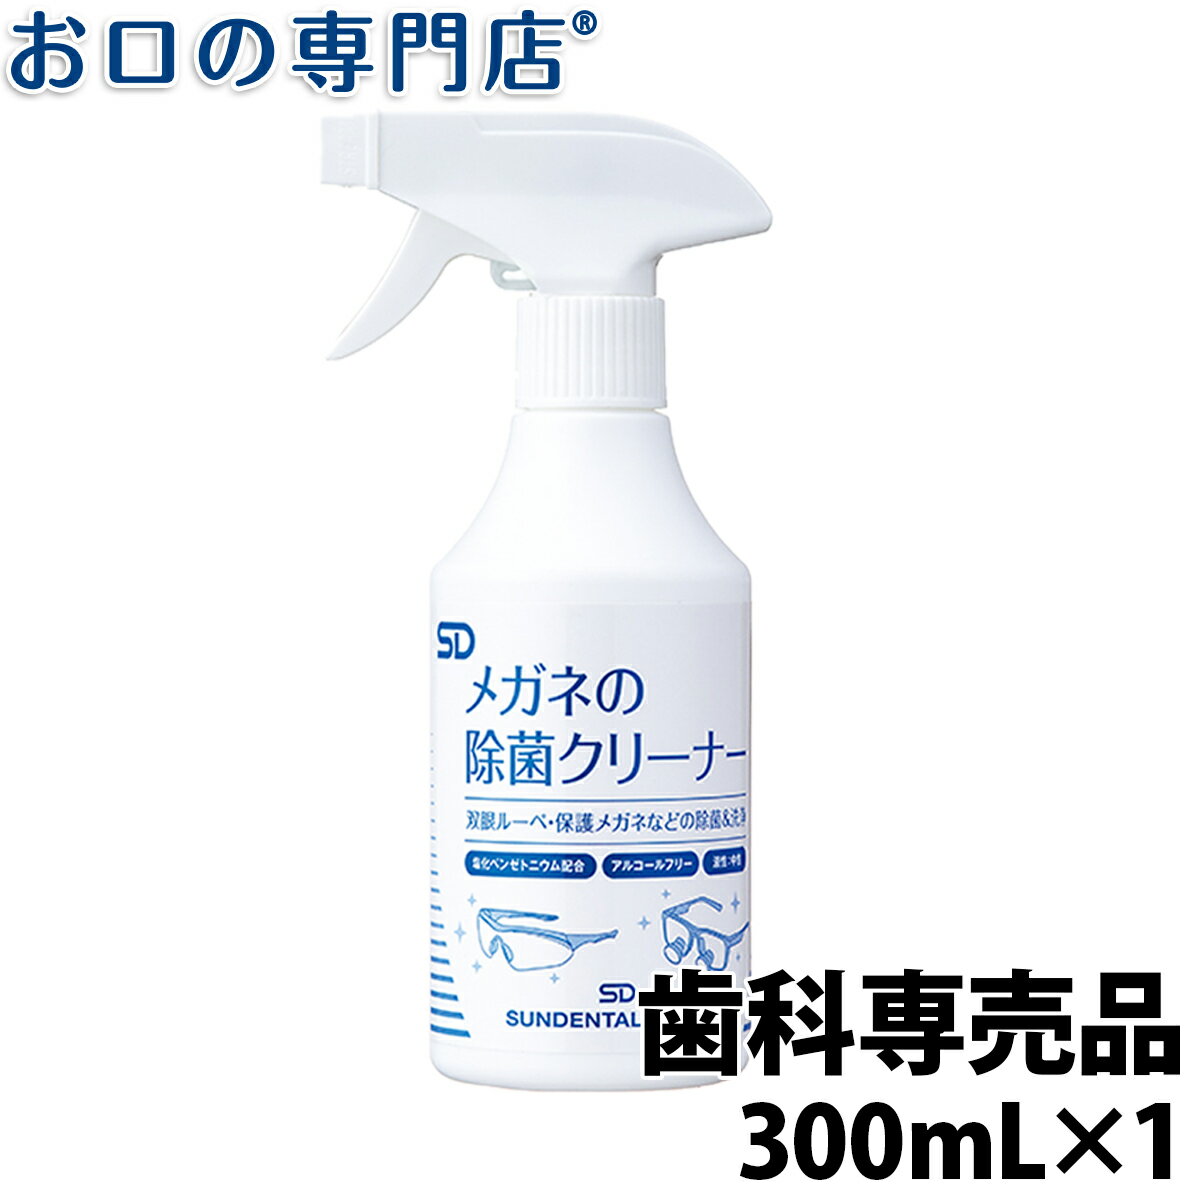 【最大800円OFFクーポン有】SD メガネの除菌クリーナー スプレーボトル (300mL) 1本 レギュラーサイズ